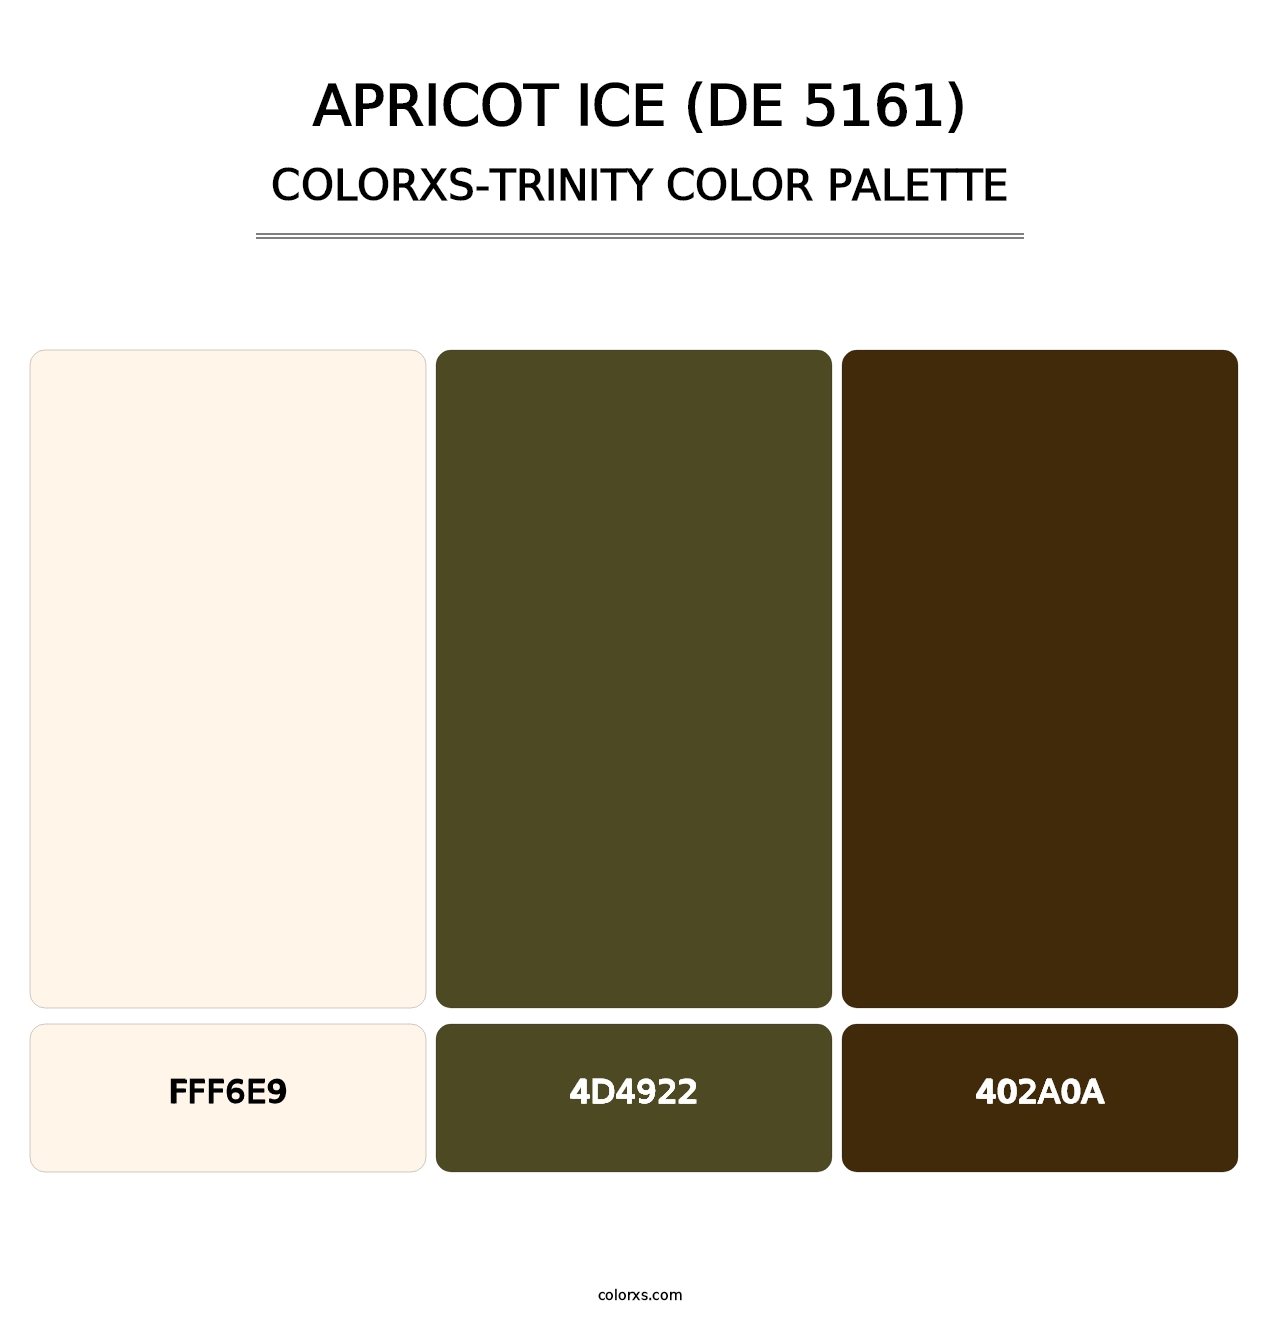 Apricot Ice (DE 5161) - Colorxs Trinity Palette